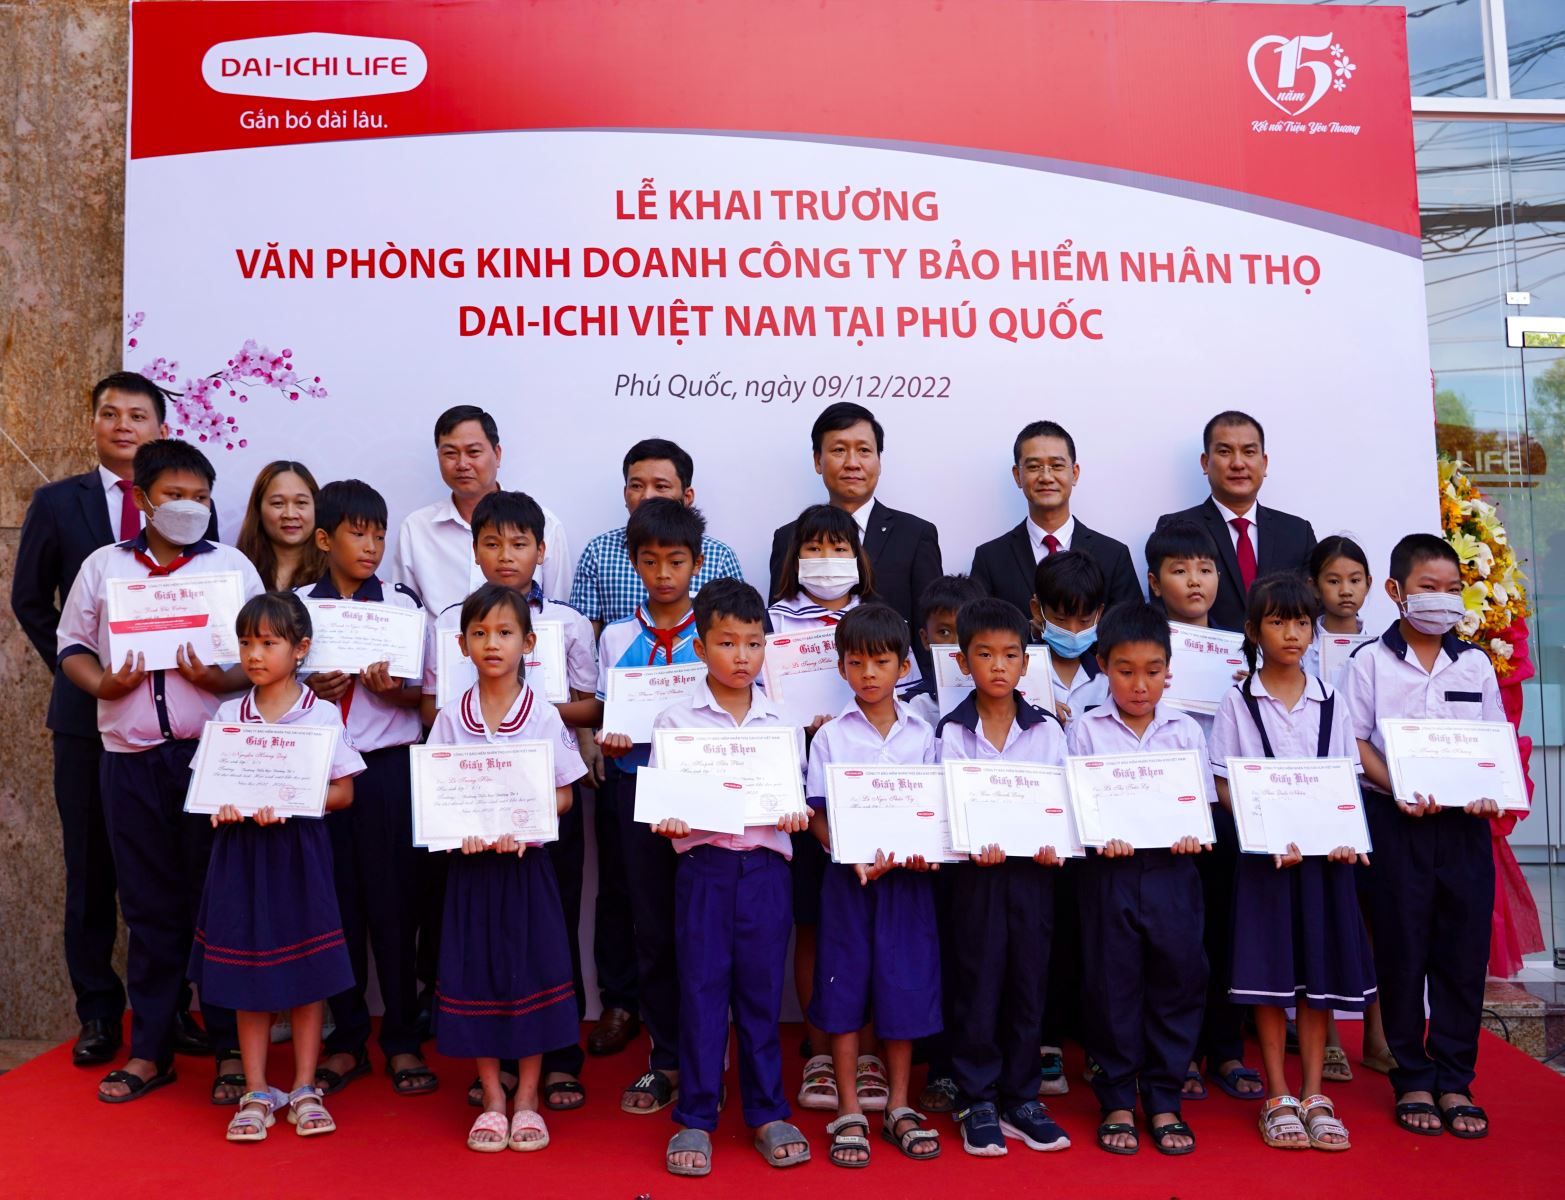 Ban giám đốc Dai-ichi Life Việt Nam trao tặng học bổng cho các em học sinh vượt khó tại Phú Quốc.